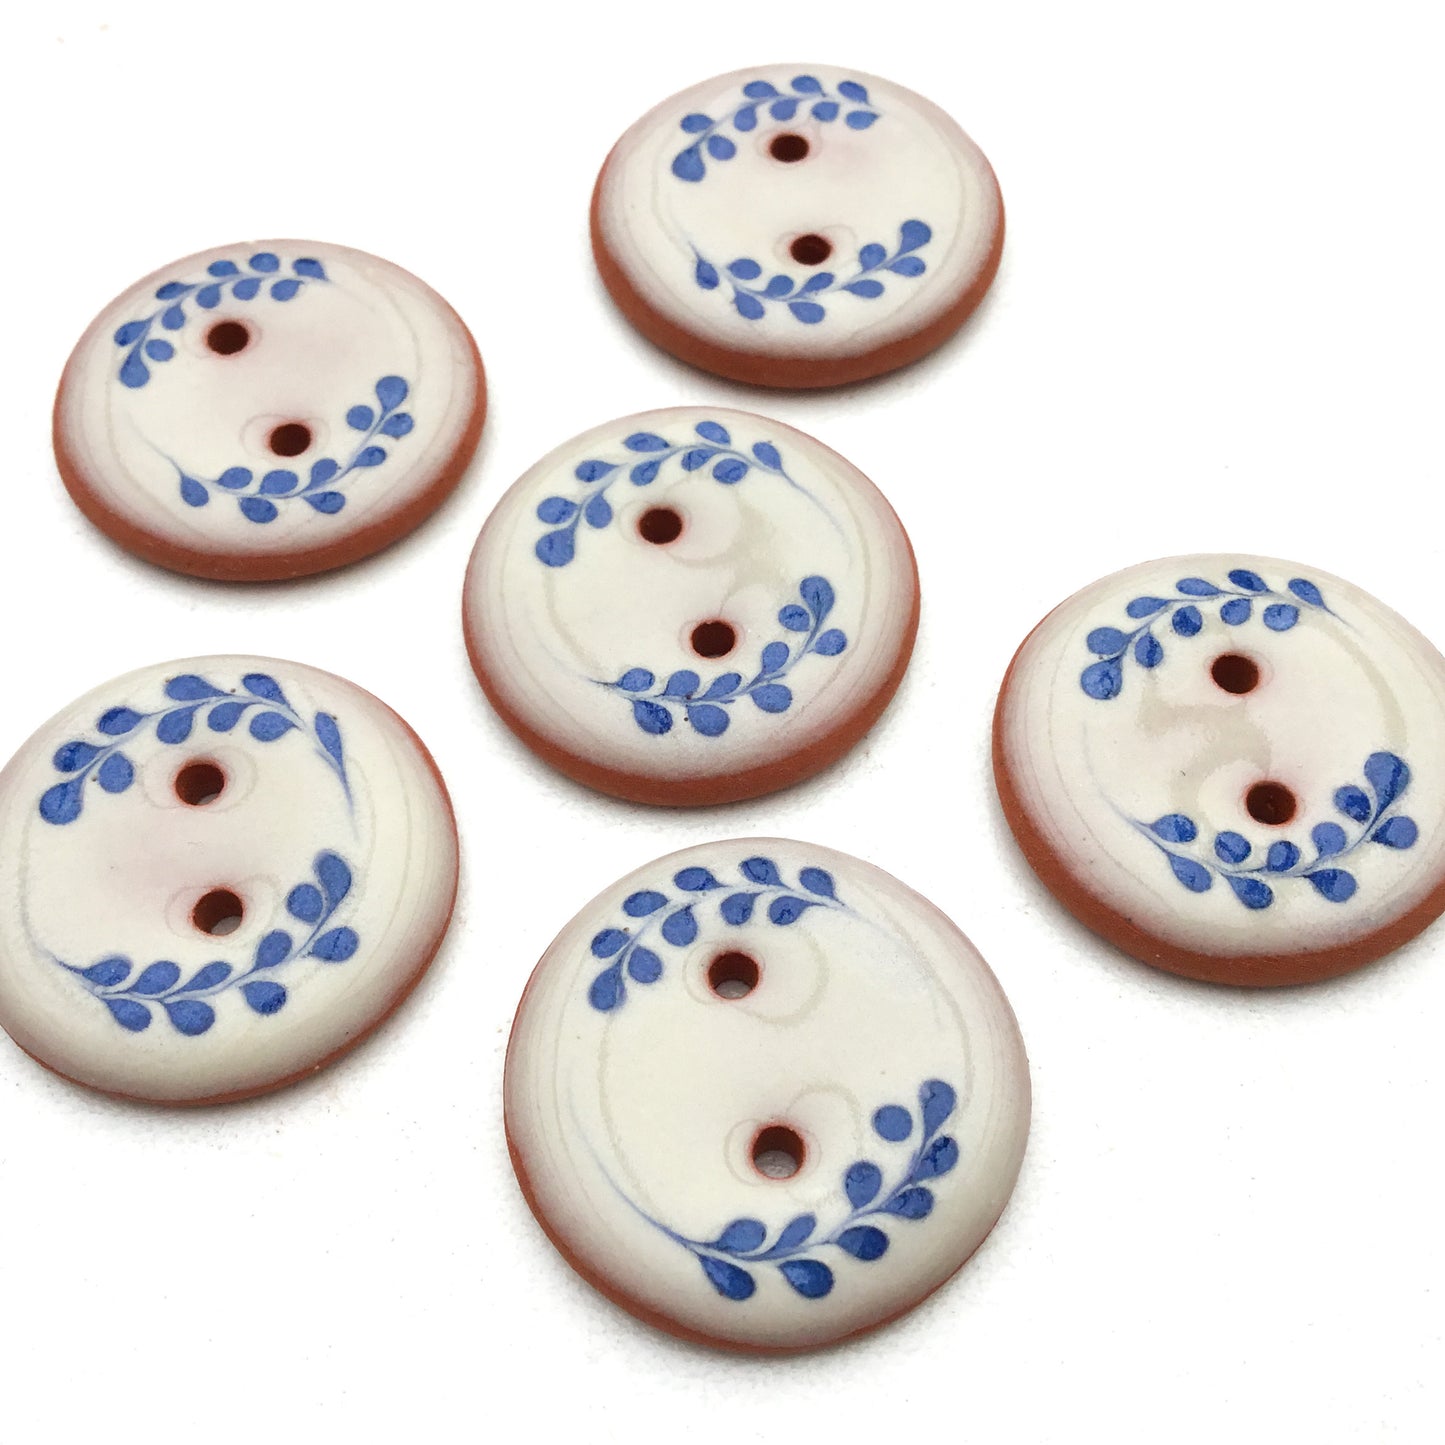 Antique White Button with Blue Florets  7/8"